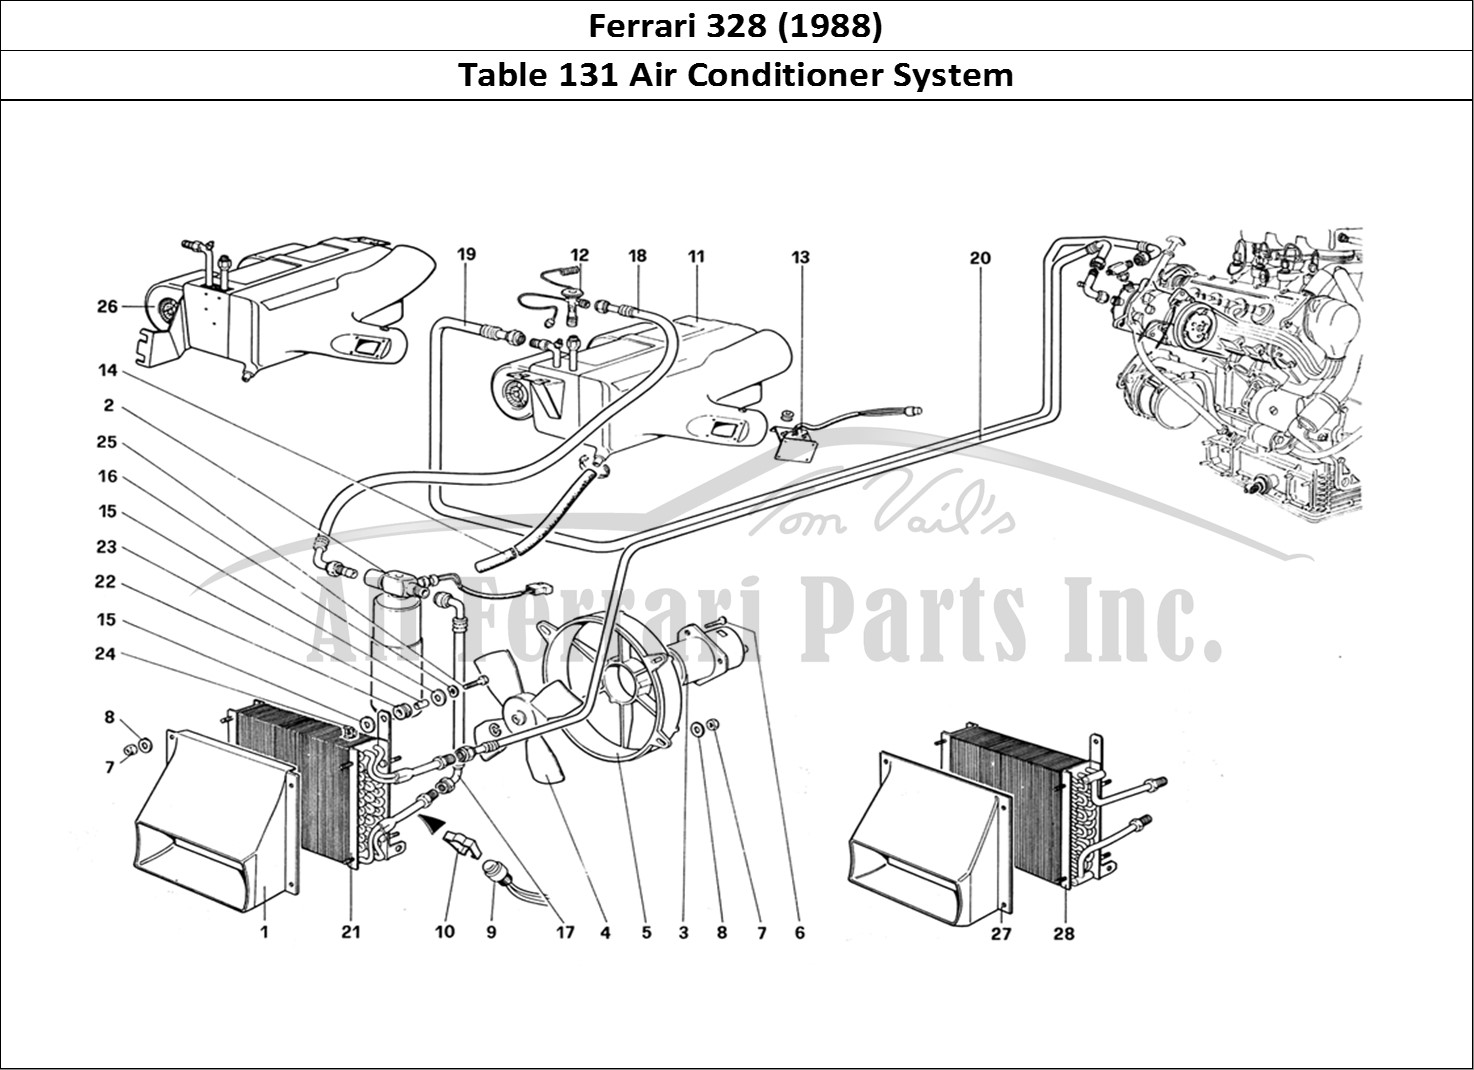 Ferrari Parts Ferrari 328 (1988) Page 131 Air Conditioning System